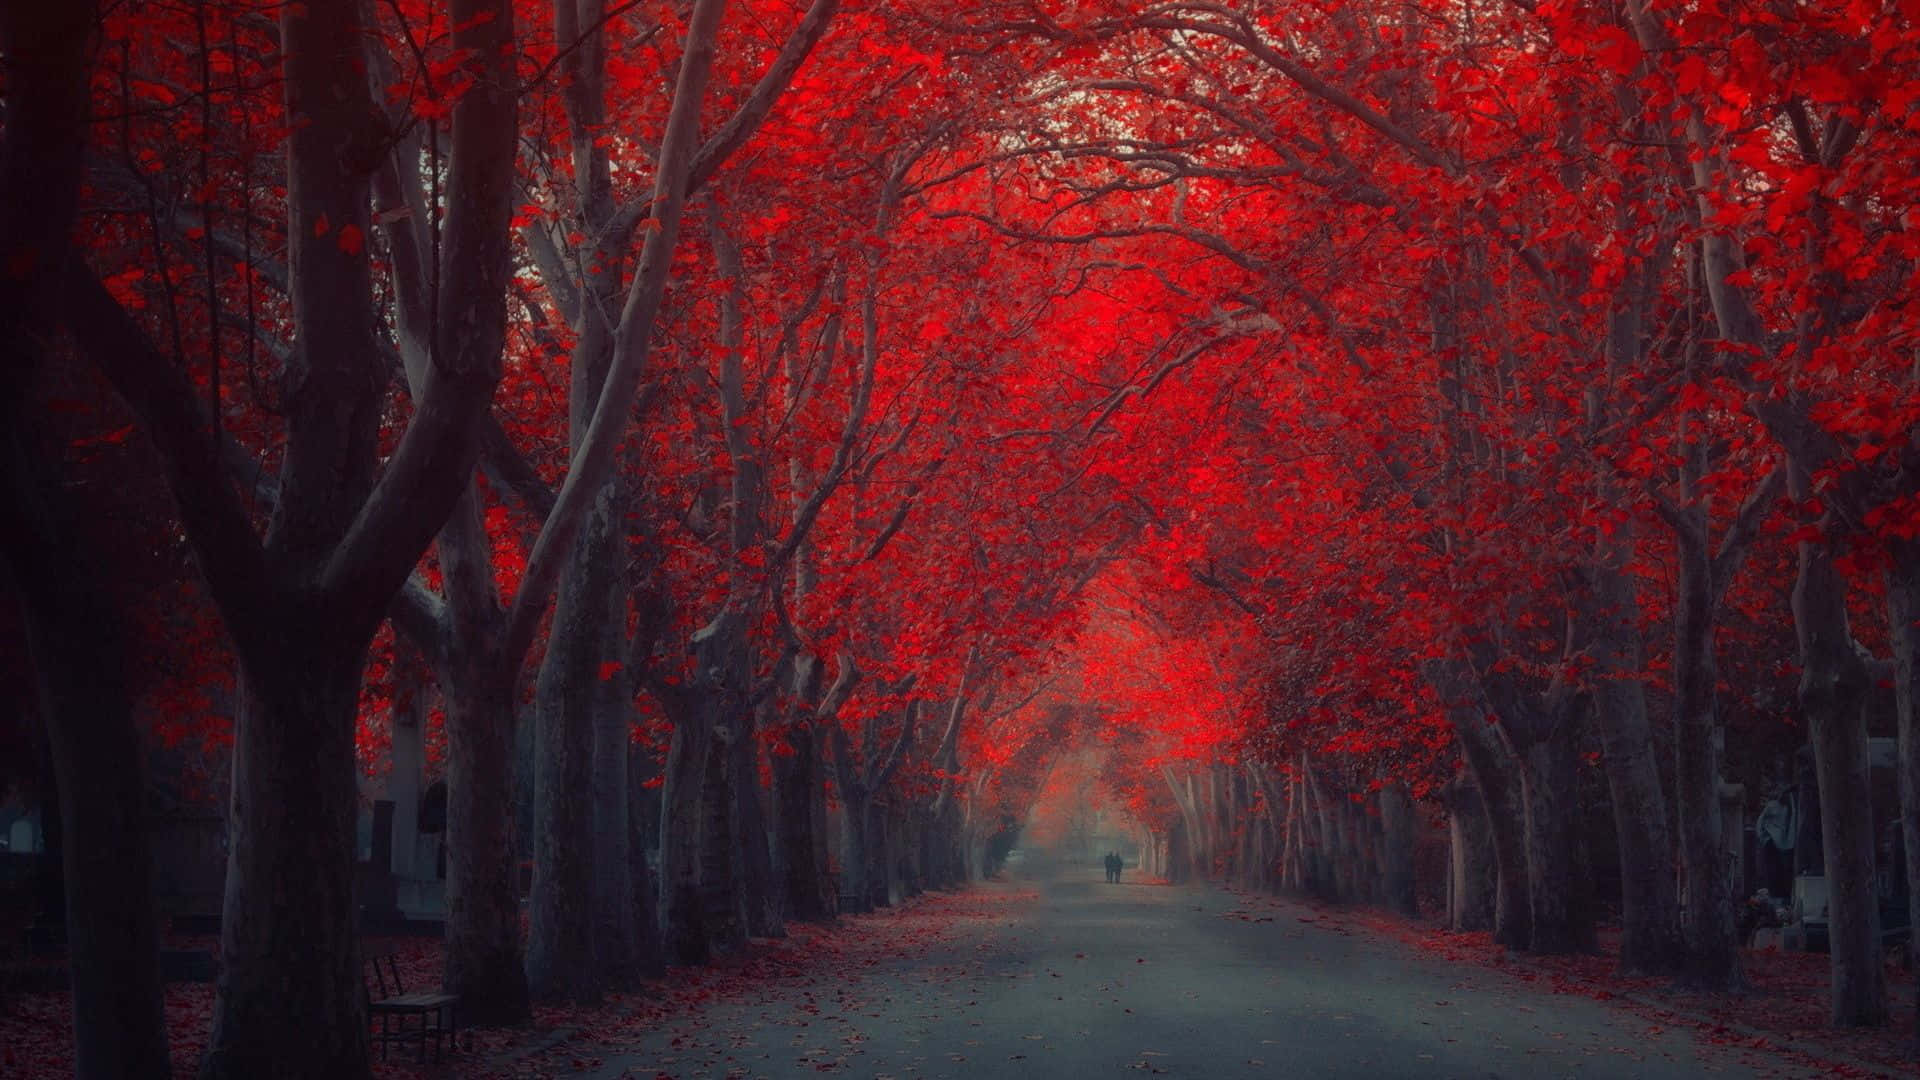 Árvorevermelha Deslumbrante No Meio De Um Prado De Grama. Papel de Parede